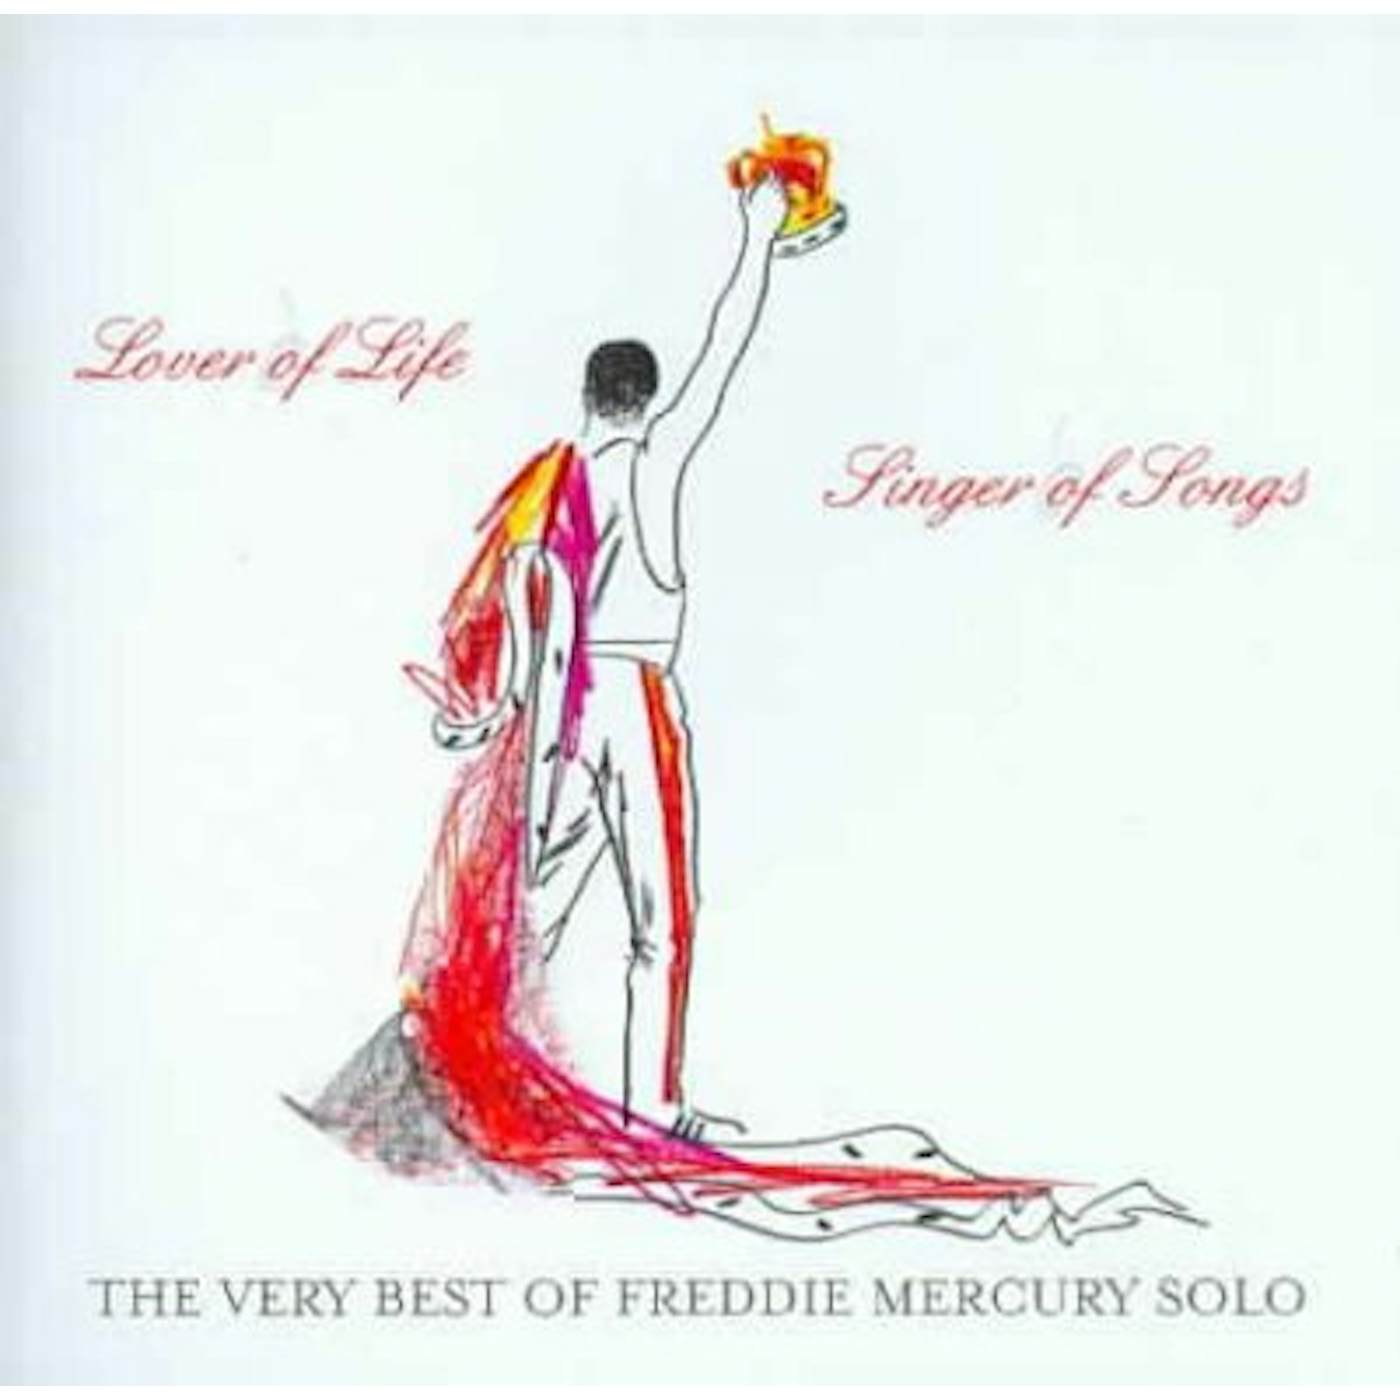 Freddie Mercury Lover Of Life, Singer Of Songs (2 CD) CD